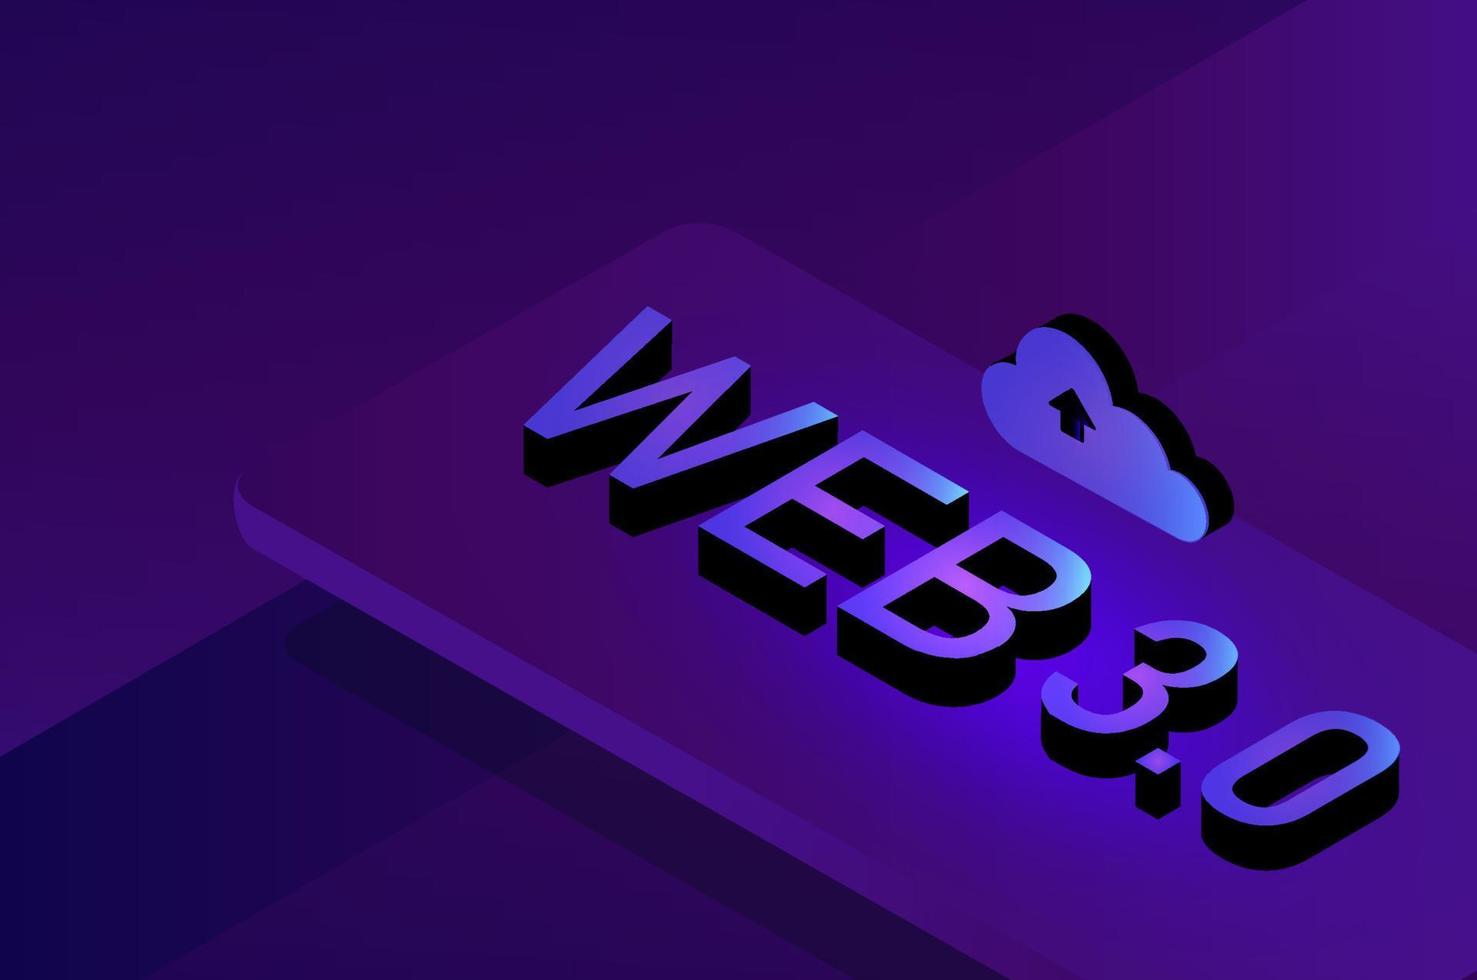 web 3.0-koncept, web 3.0-typografi på blå bakgrund, ny version av webbplats med blockchain-teknik, kryptovaluta och nft art. vektor illustration